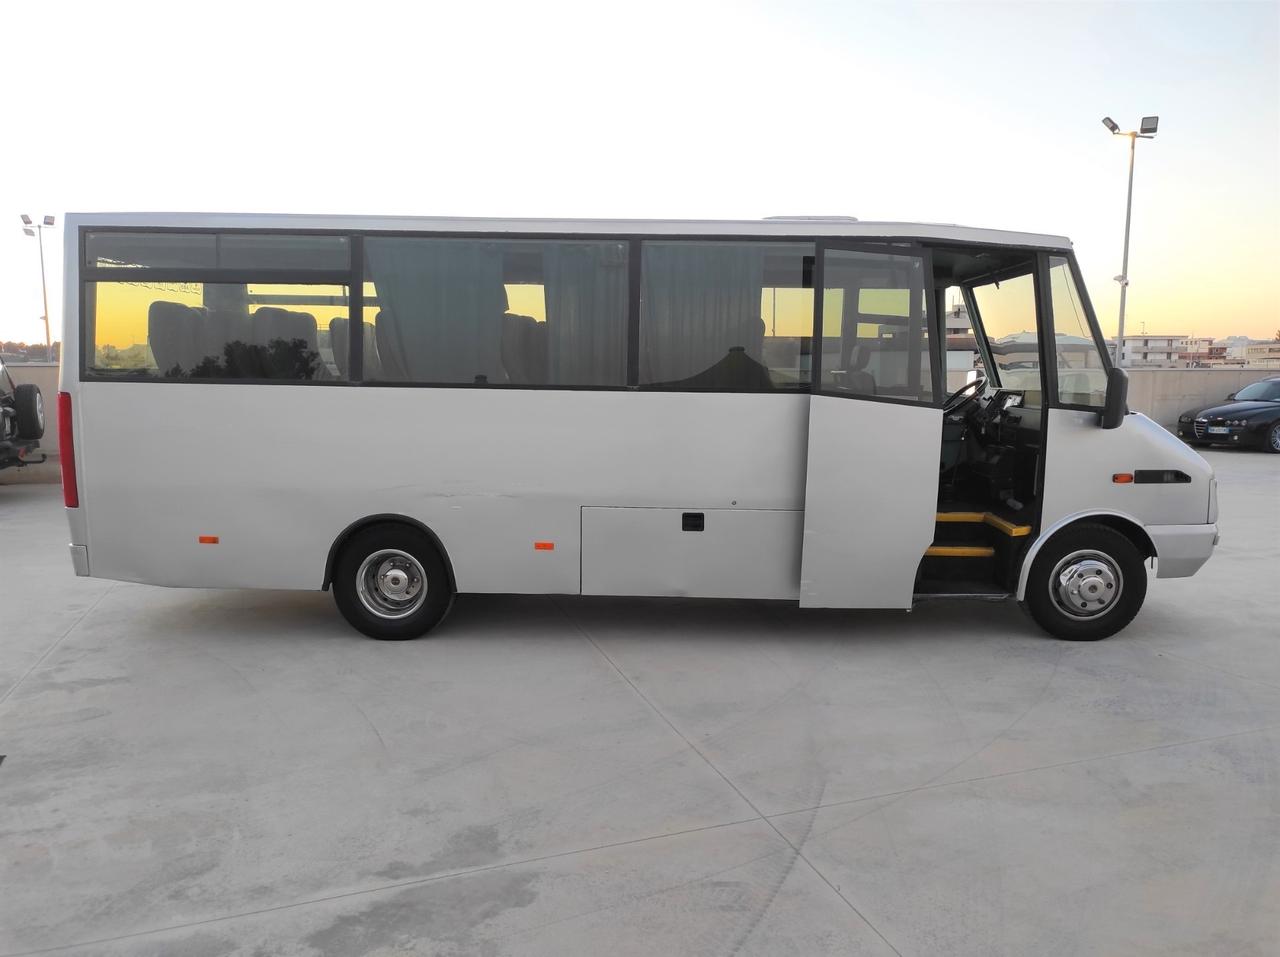 Iveco Minibus 25 POSTI - 2.5 Diesel 115cv